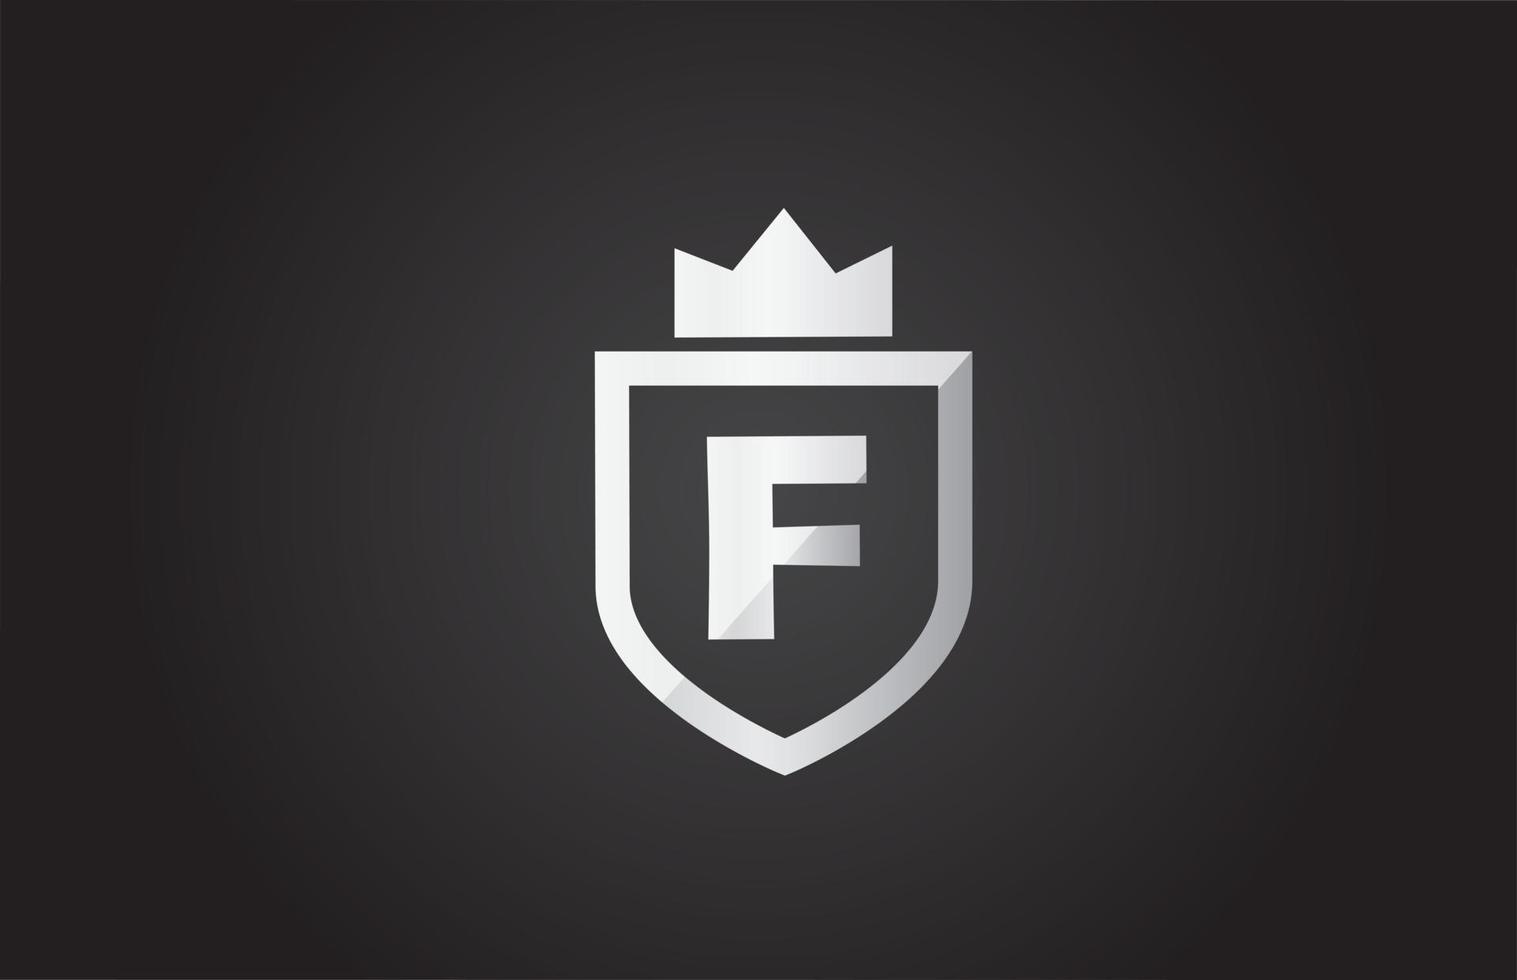 f alfabet letterpictogram logo in grijze en zwarte kleur. schildontwerp voor bedrijfsidentiteit met koningskroon vector